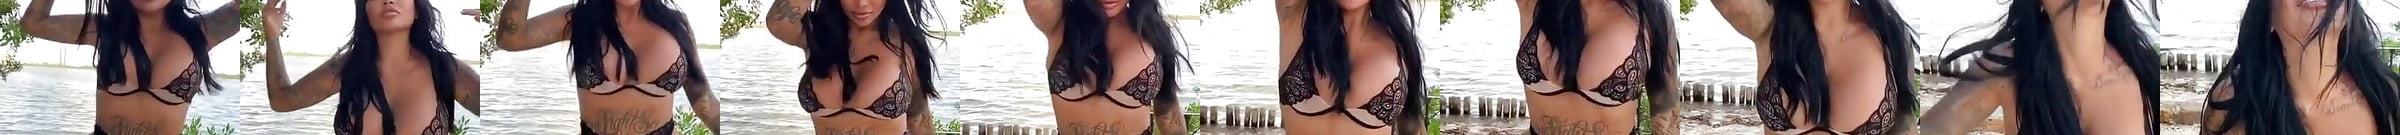 Indira Varma Desnuda Vídeos Sexuales Y Fotos Desnudas Filtradas Xhamster